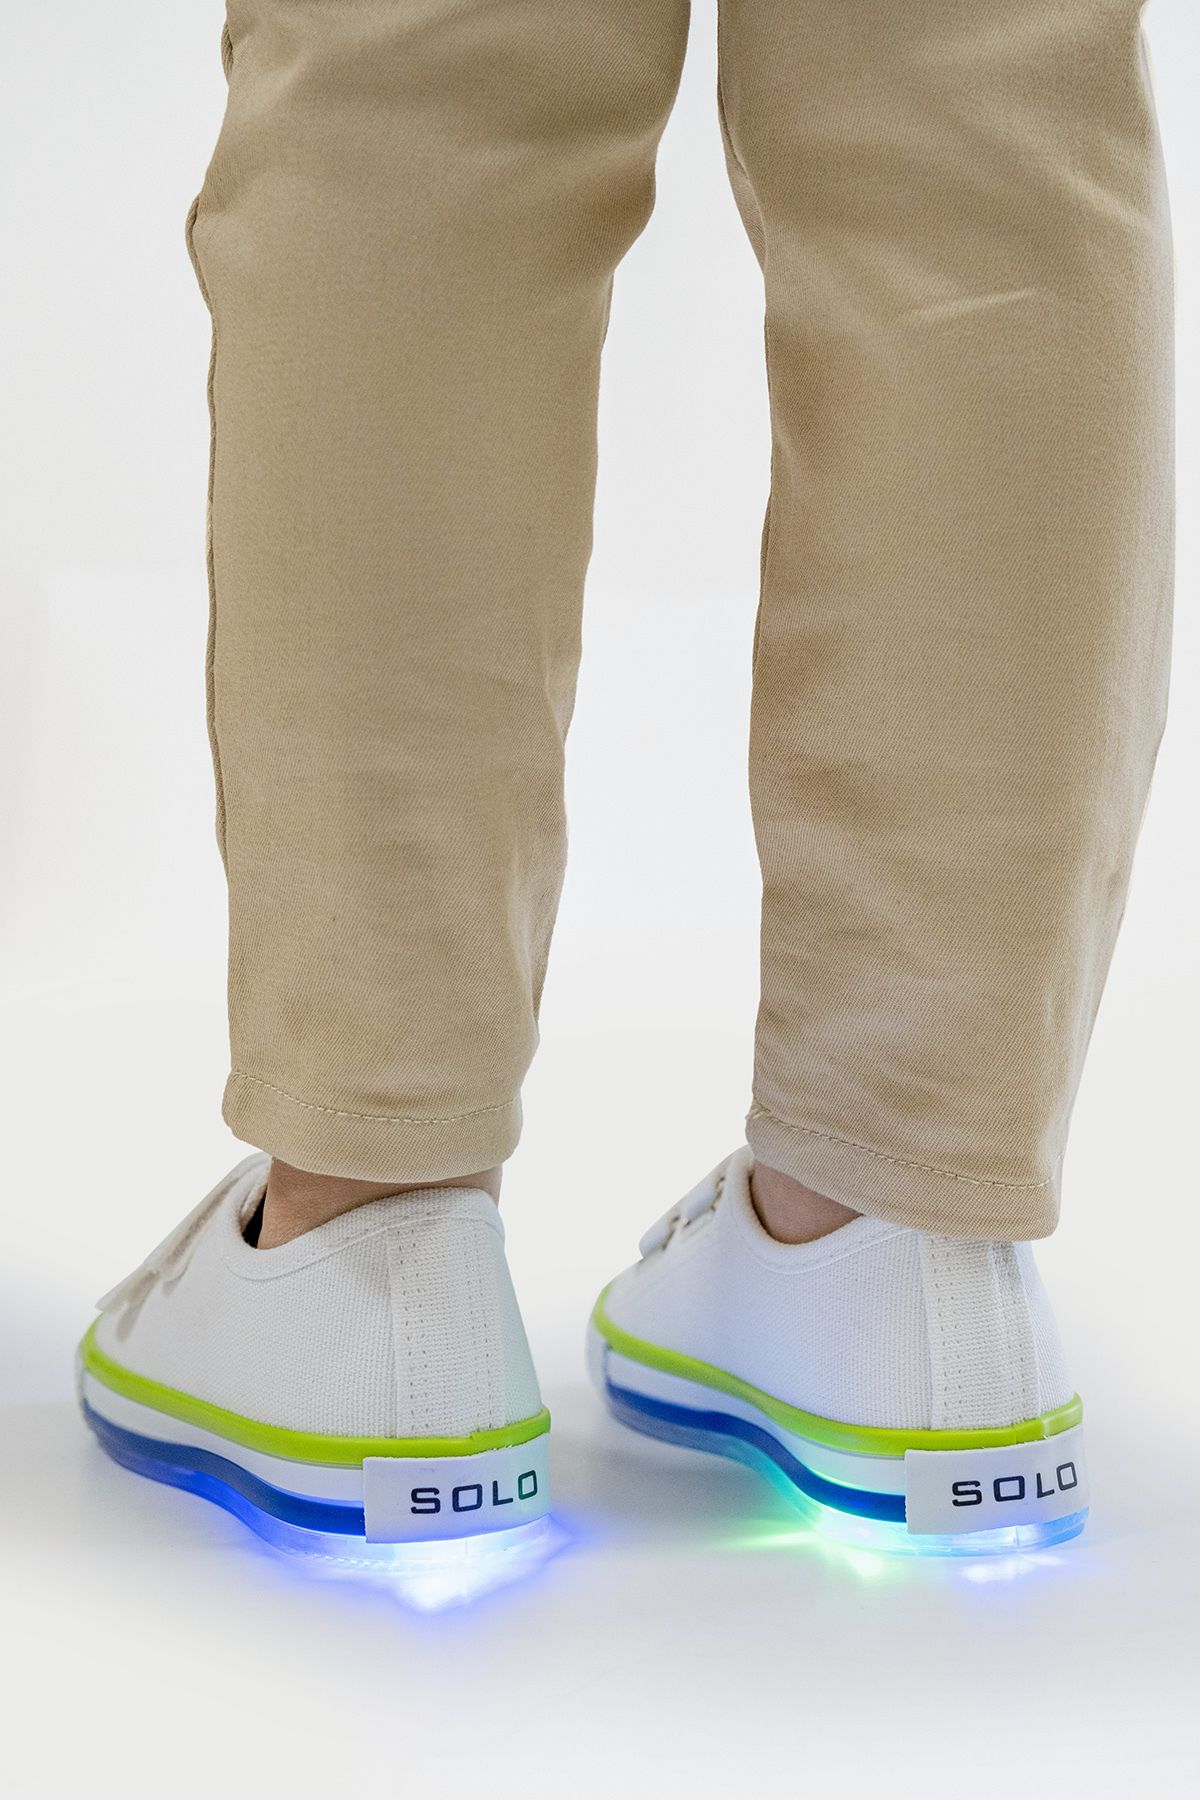 Solo Bag Günlük Unisex Kız Erkek Çocuk Cırtlı Spor Ayakkabı Sneakers Ortopedik Okul Ayakkabısı